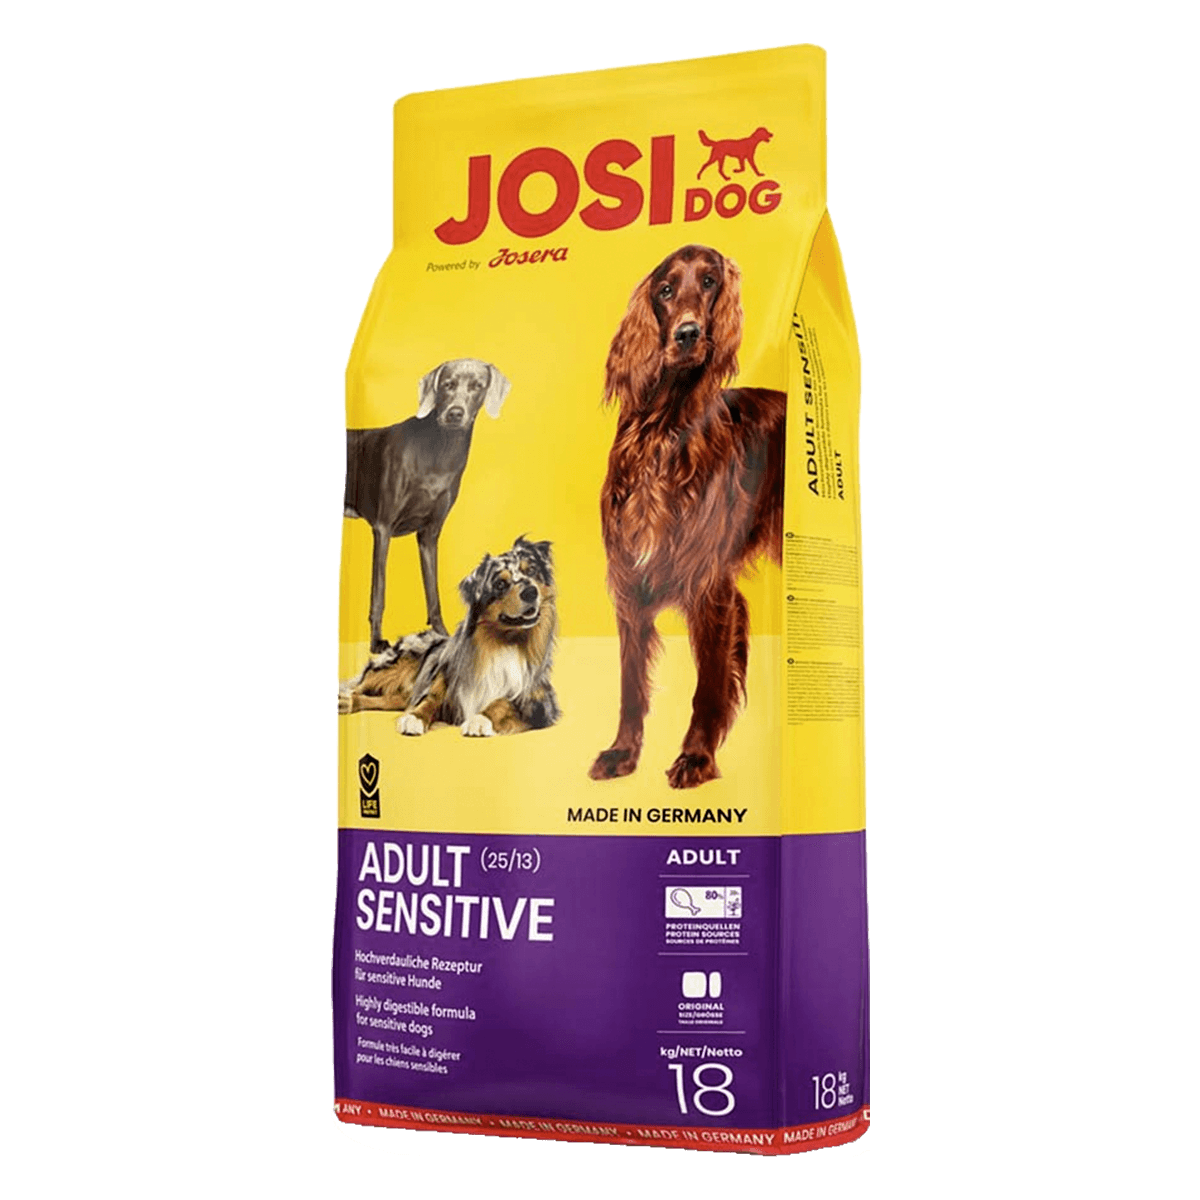 Josera JosiDog Adult Sensitive 25/13 - корм Йозера для собак с чувствительным пищеварением